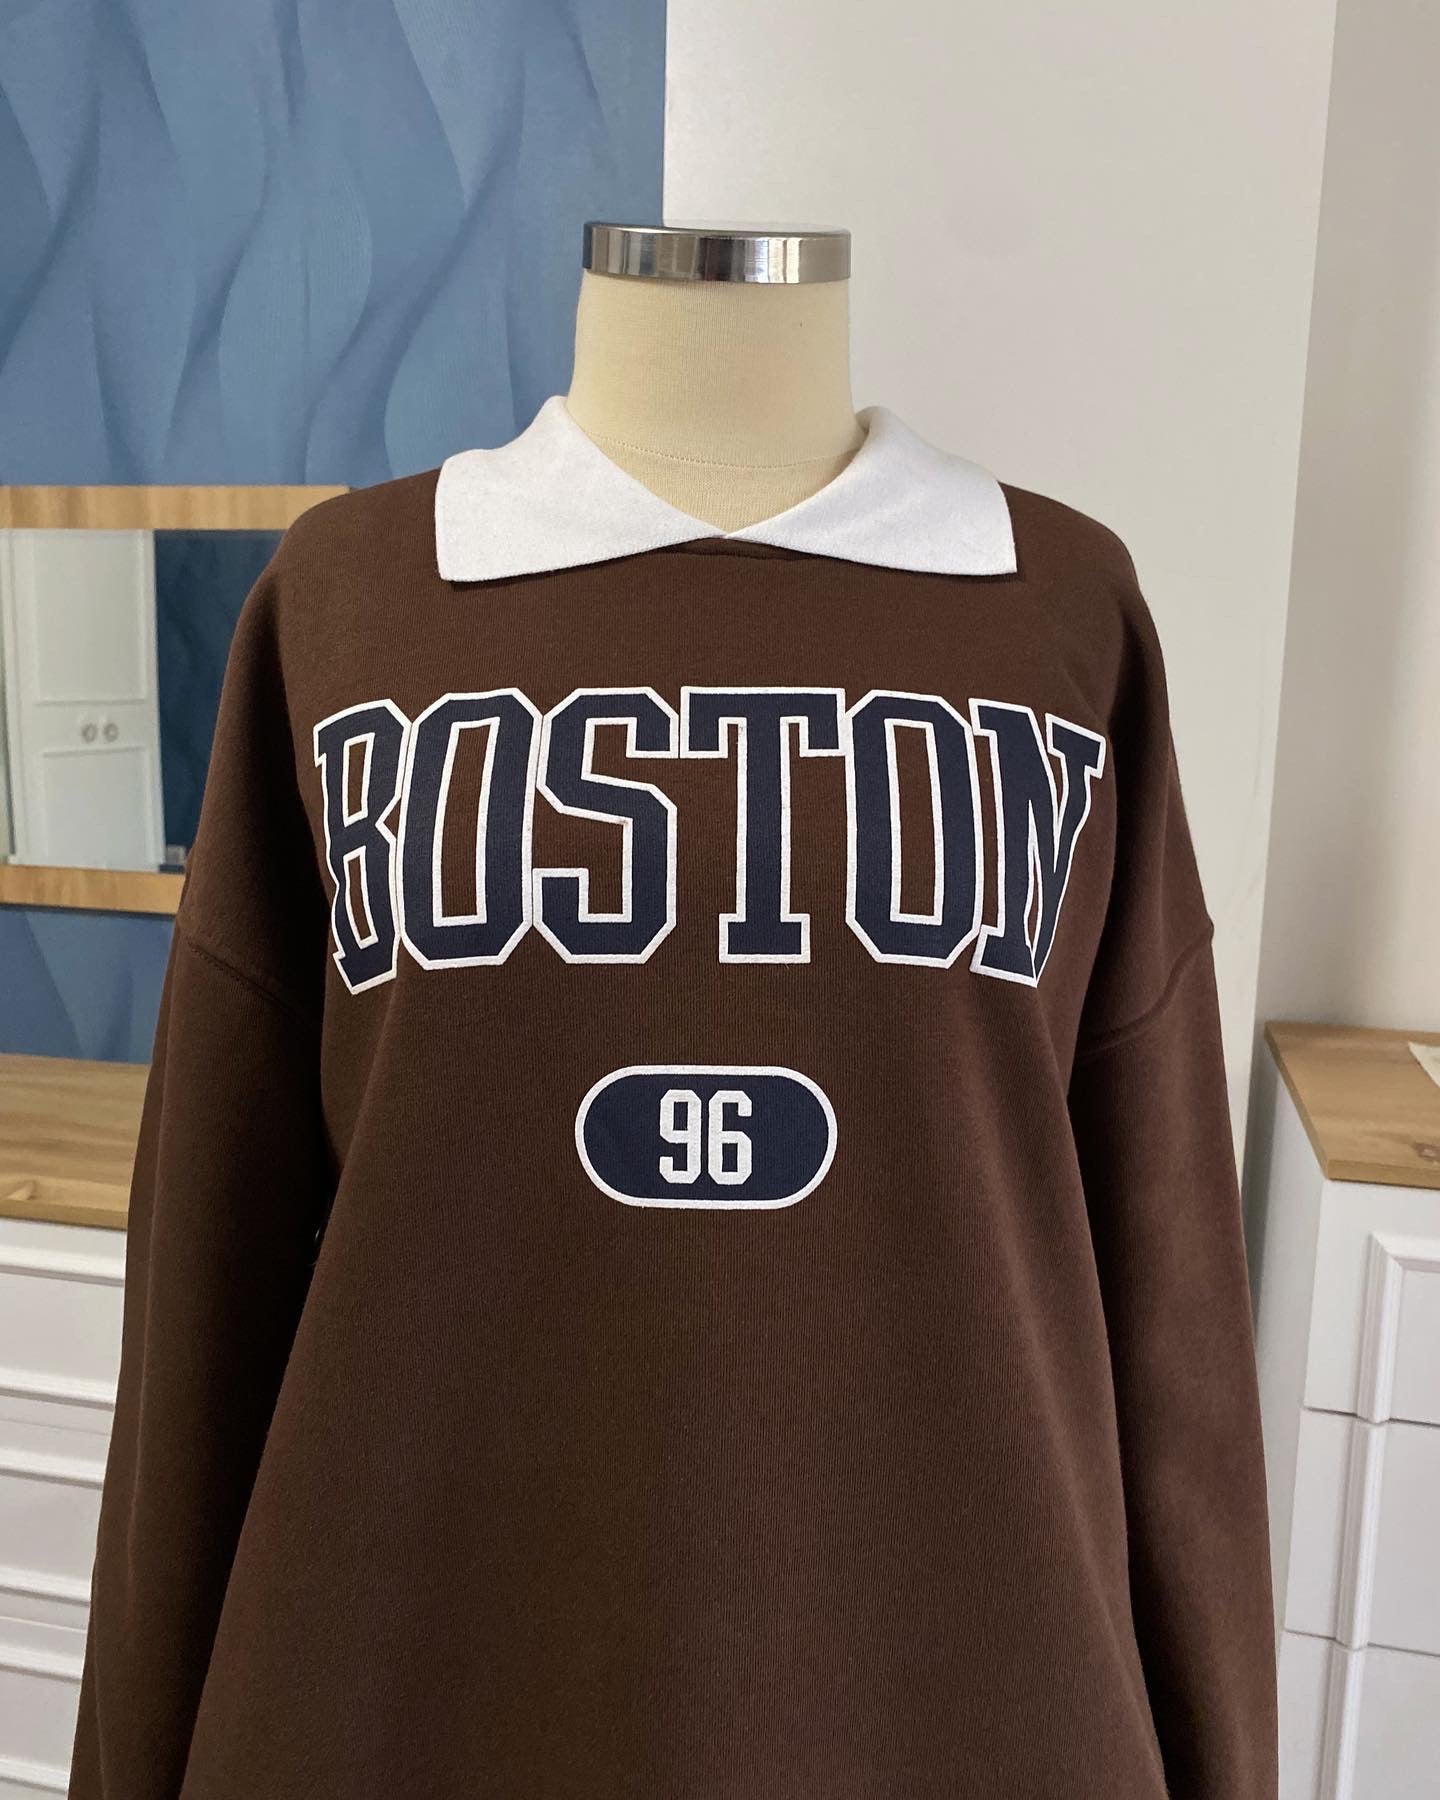 سويتر بوستن ياخه متصله جوزي - boston sweater